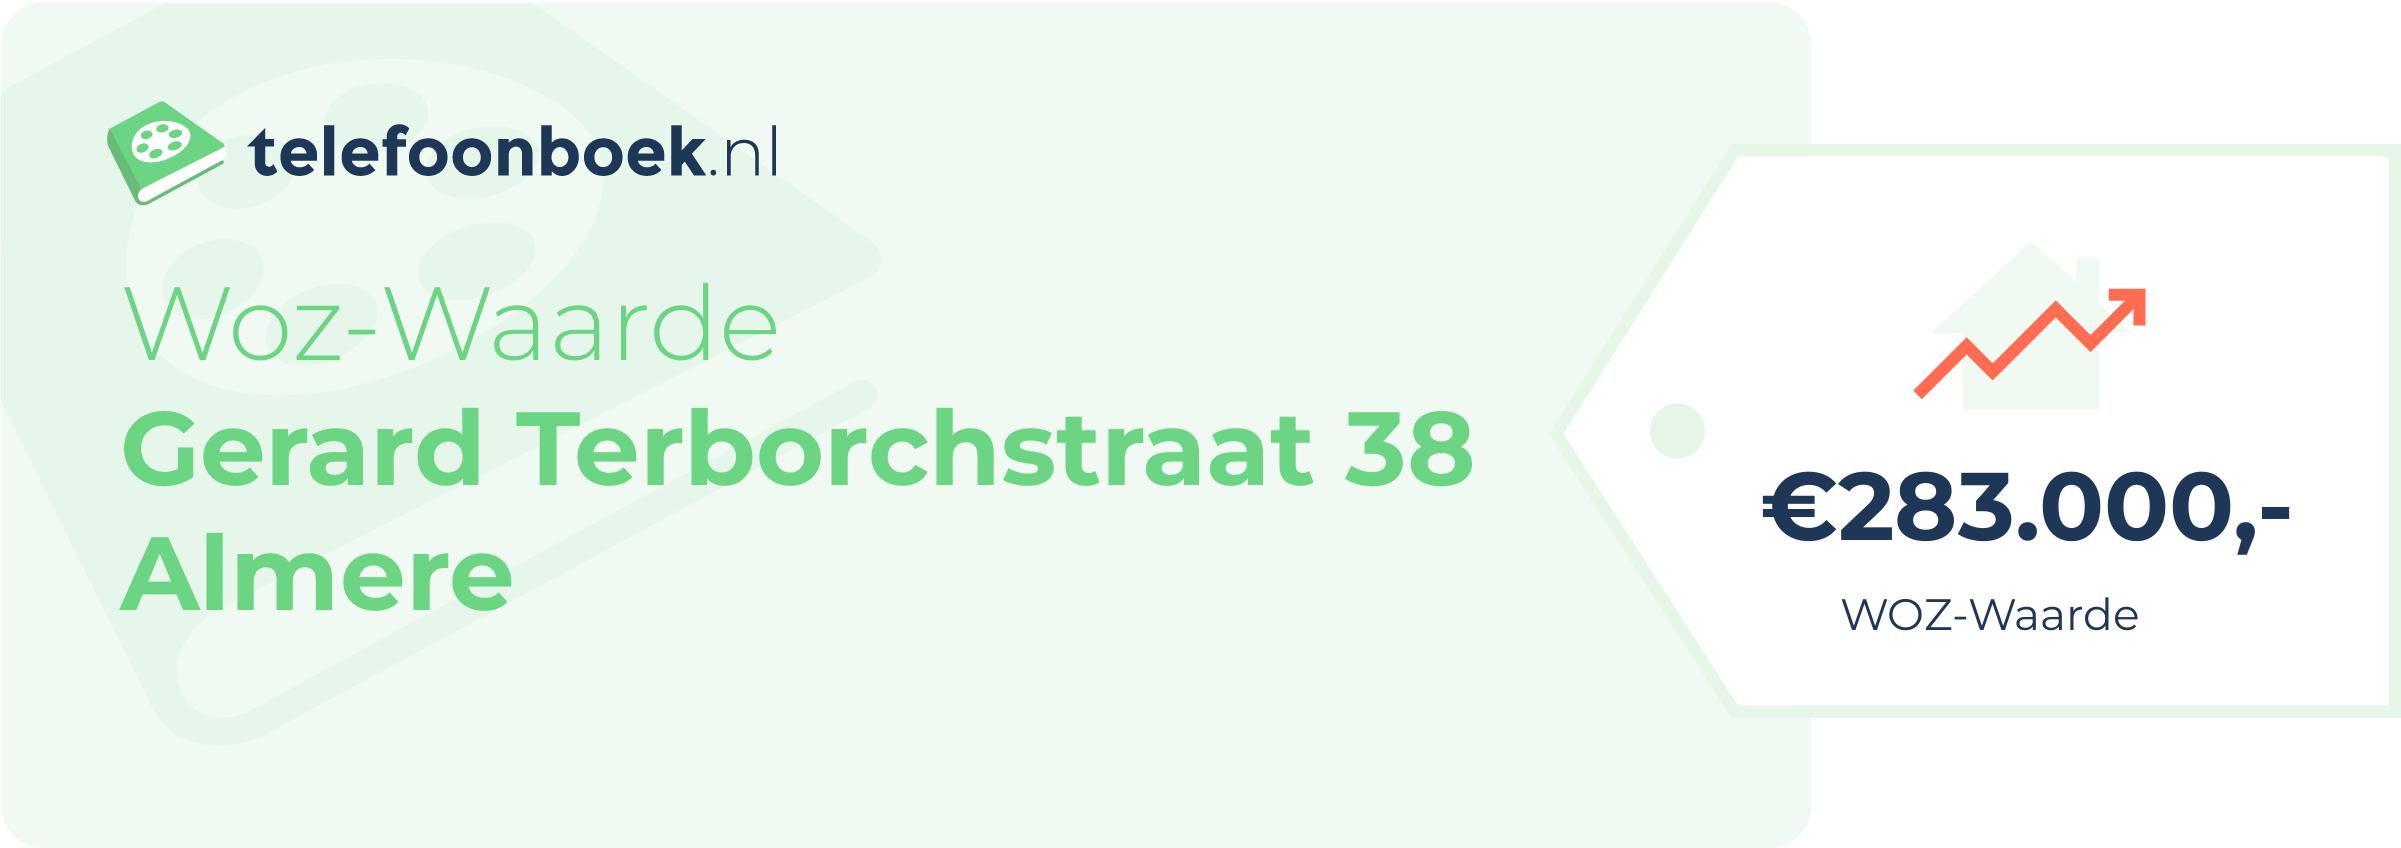 WOZ-waarde Gerard Terborchstraat 38 Almere